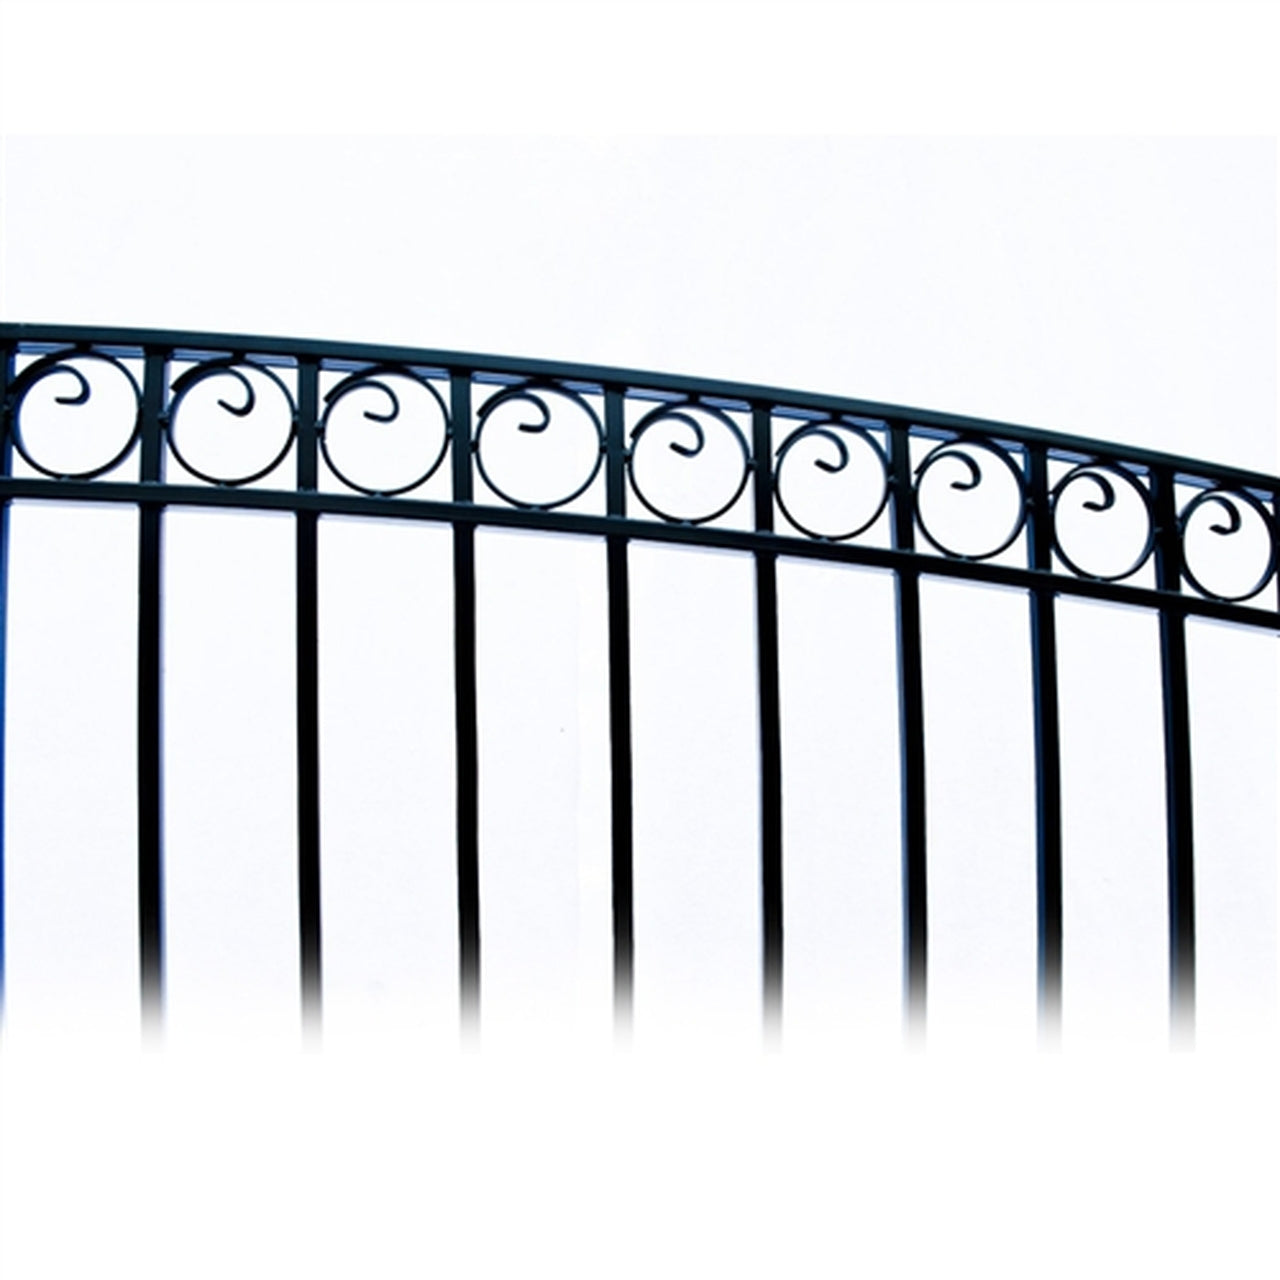 Aleko Steel Single Swing Driveway Gate - PARIS Style - 12 x 6 Feet